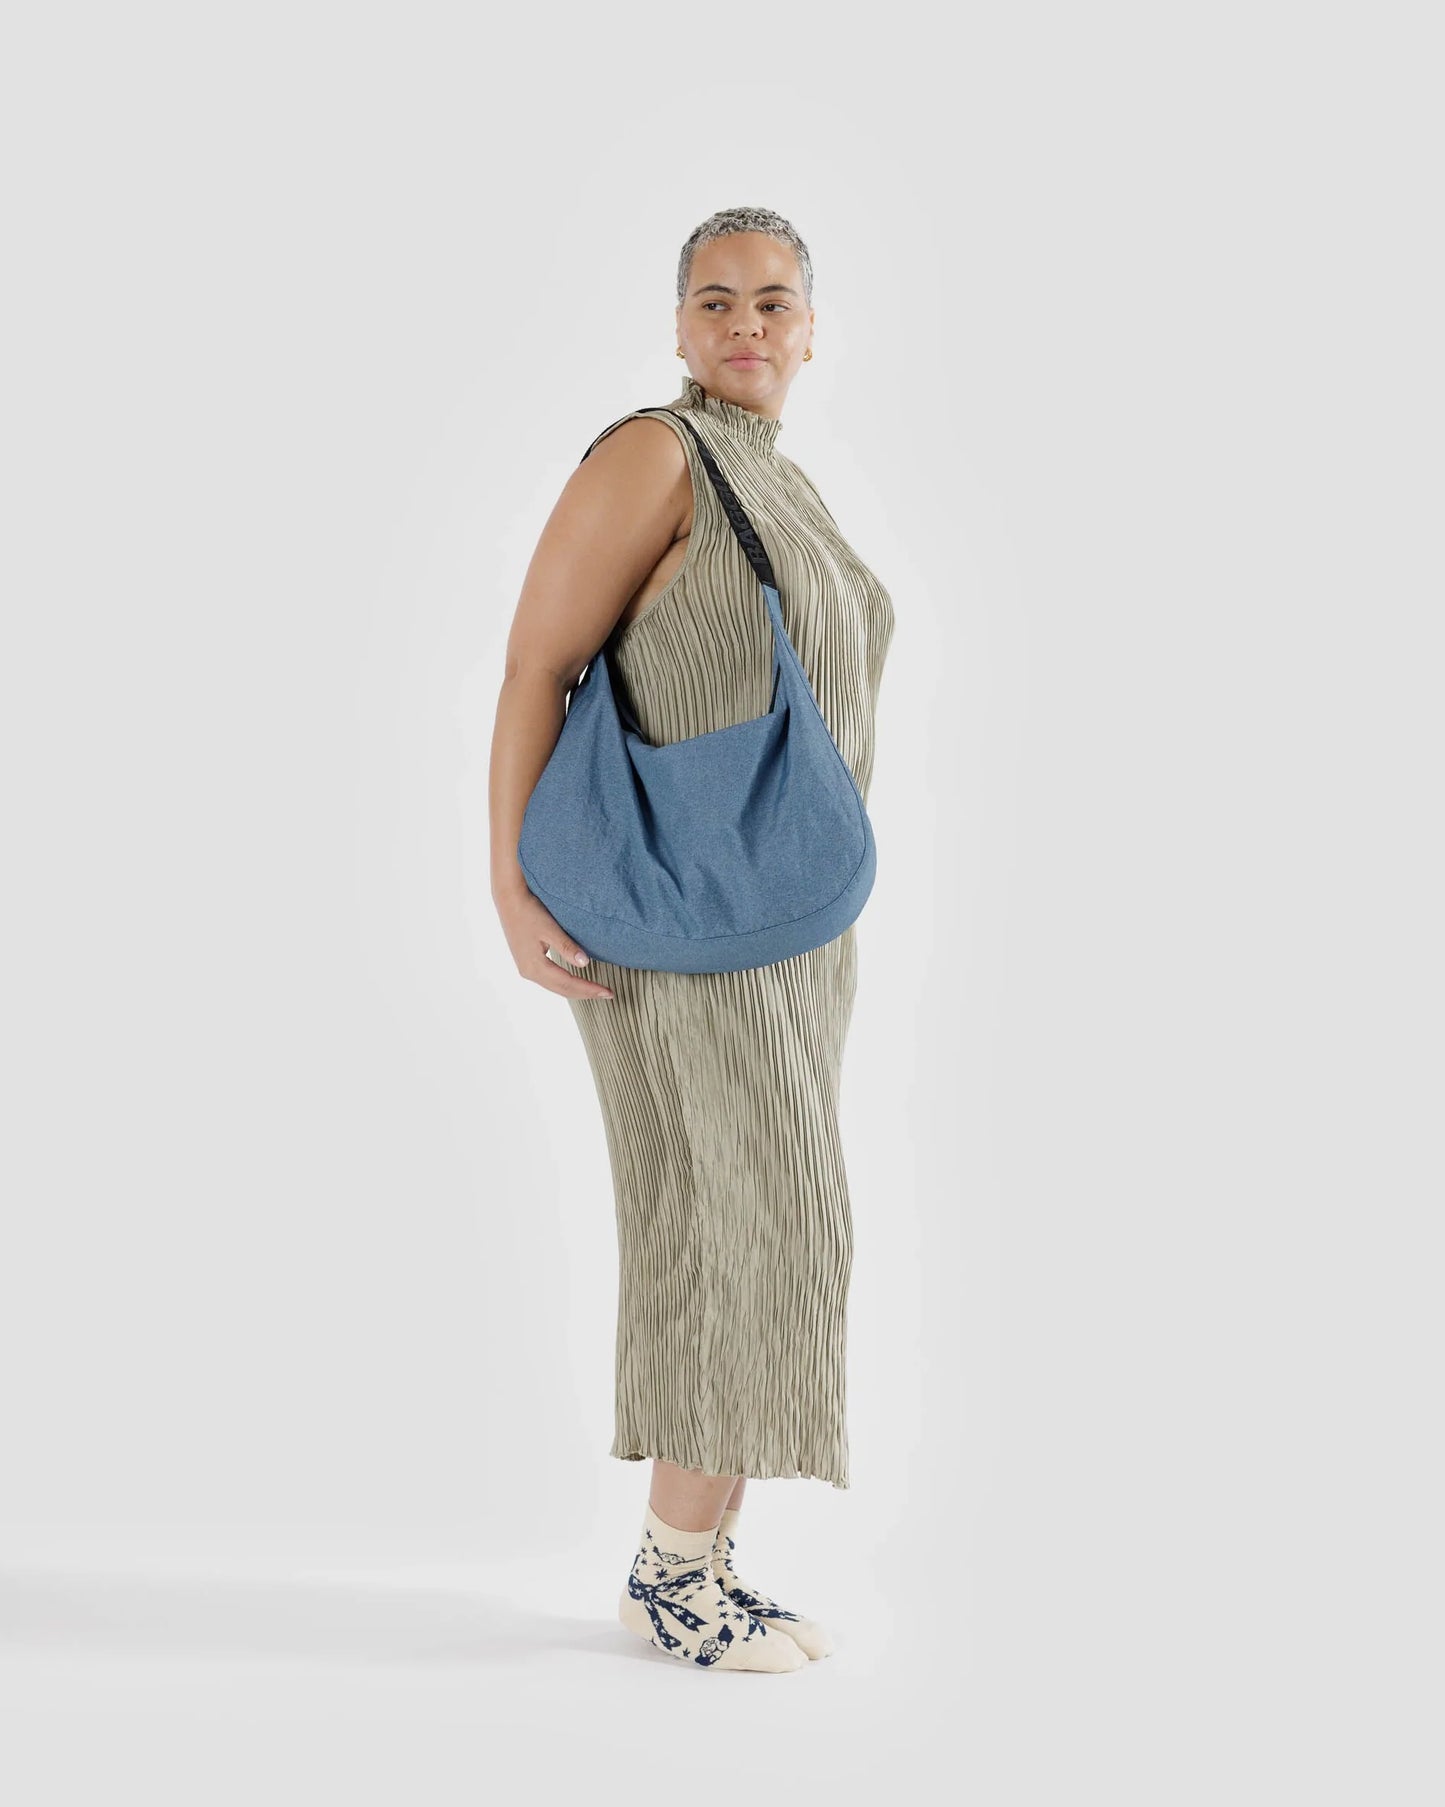 Baggu | Large Nylon Crescent Bag - Digital Denim